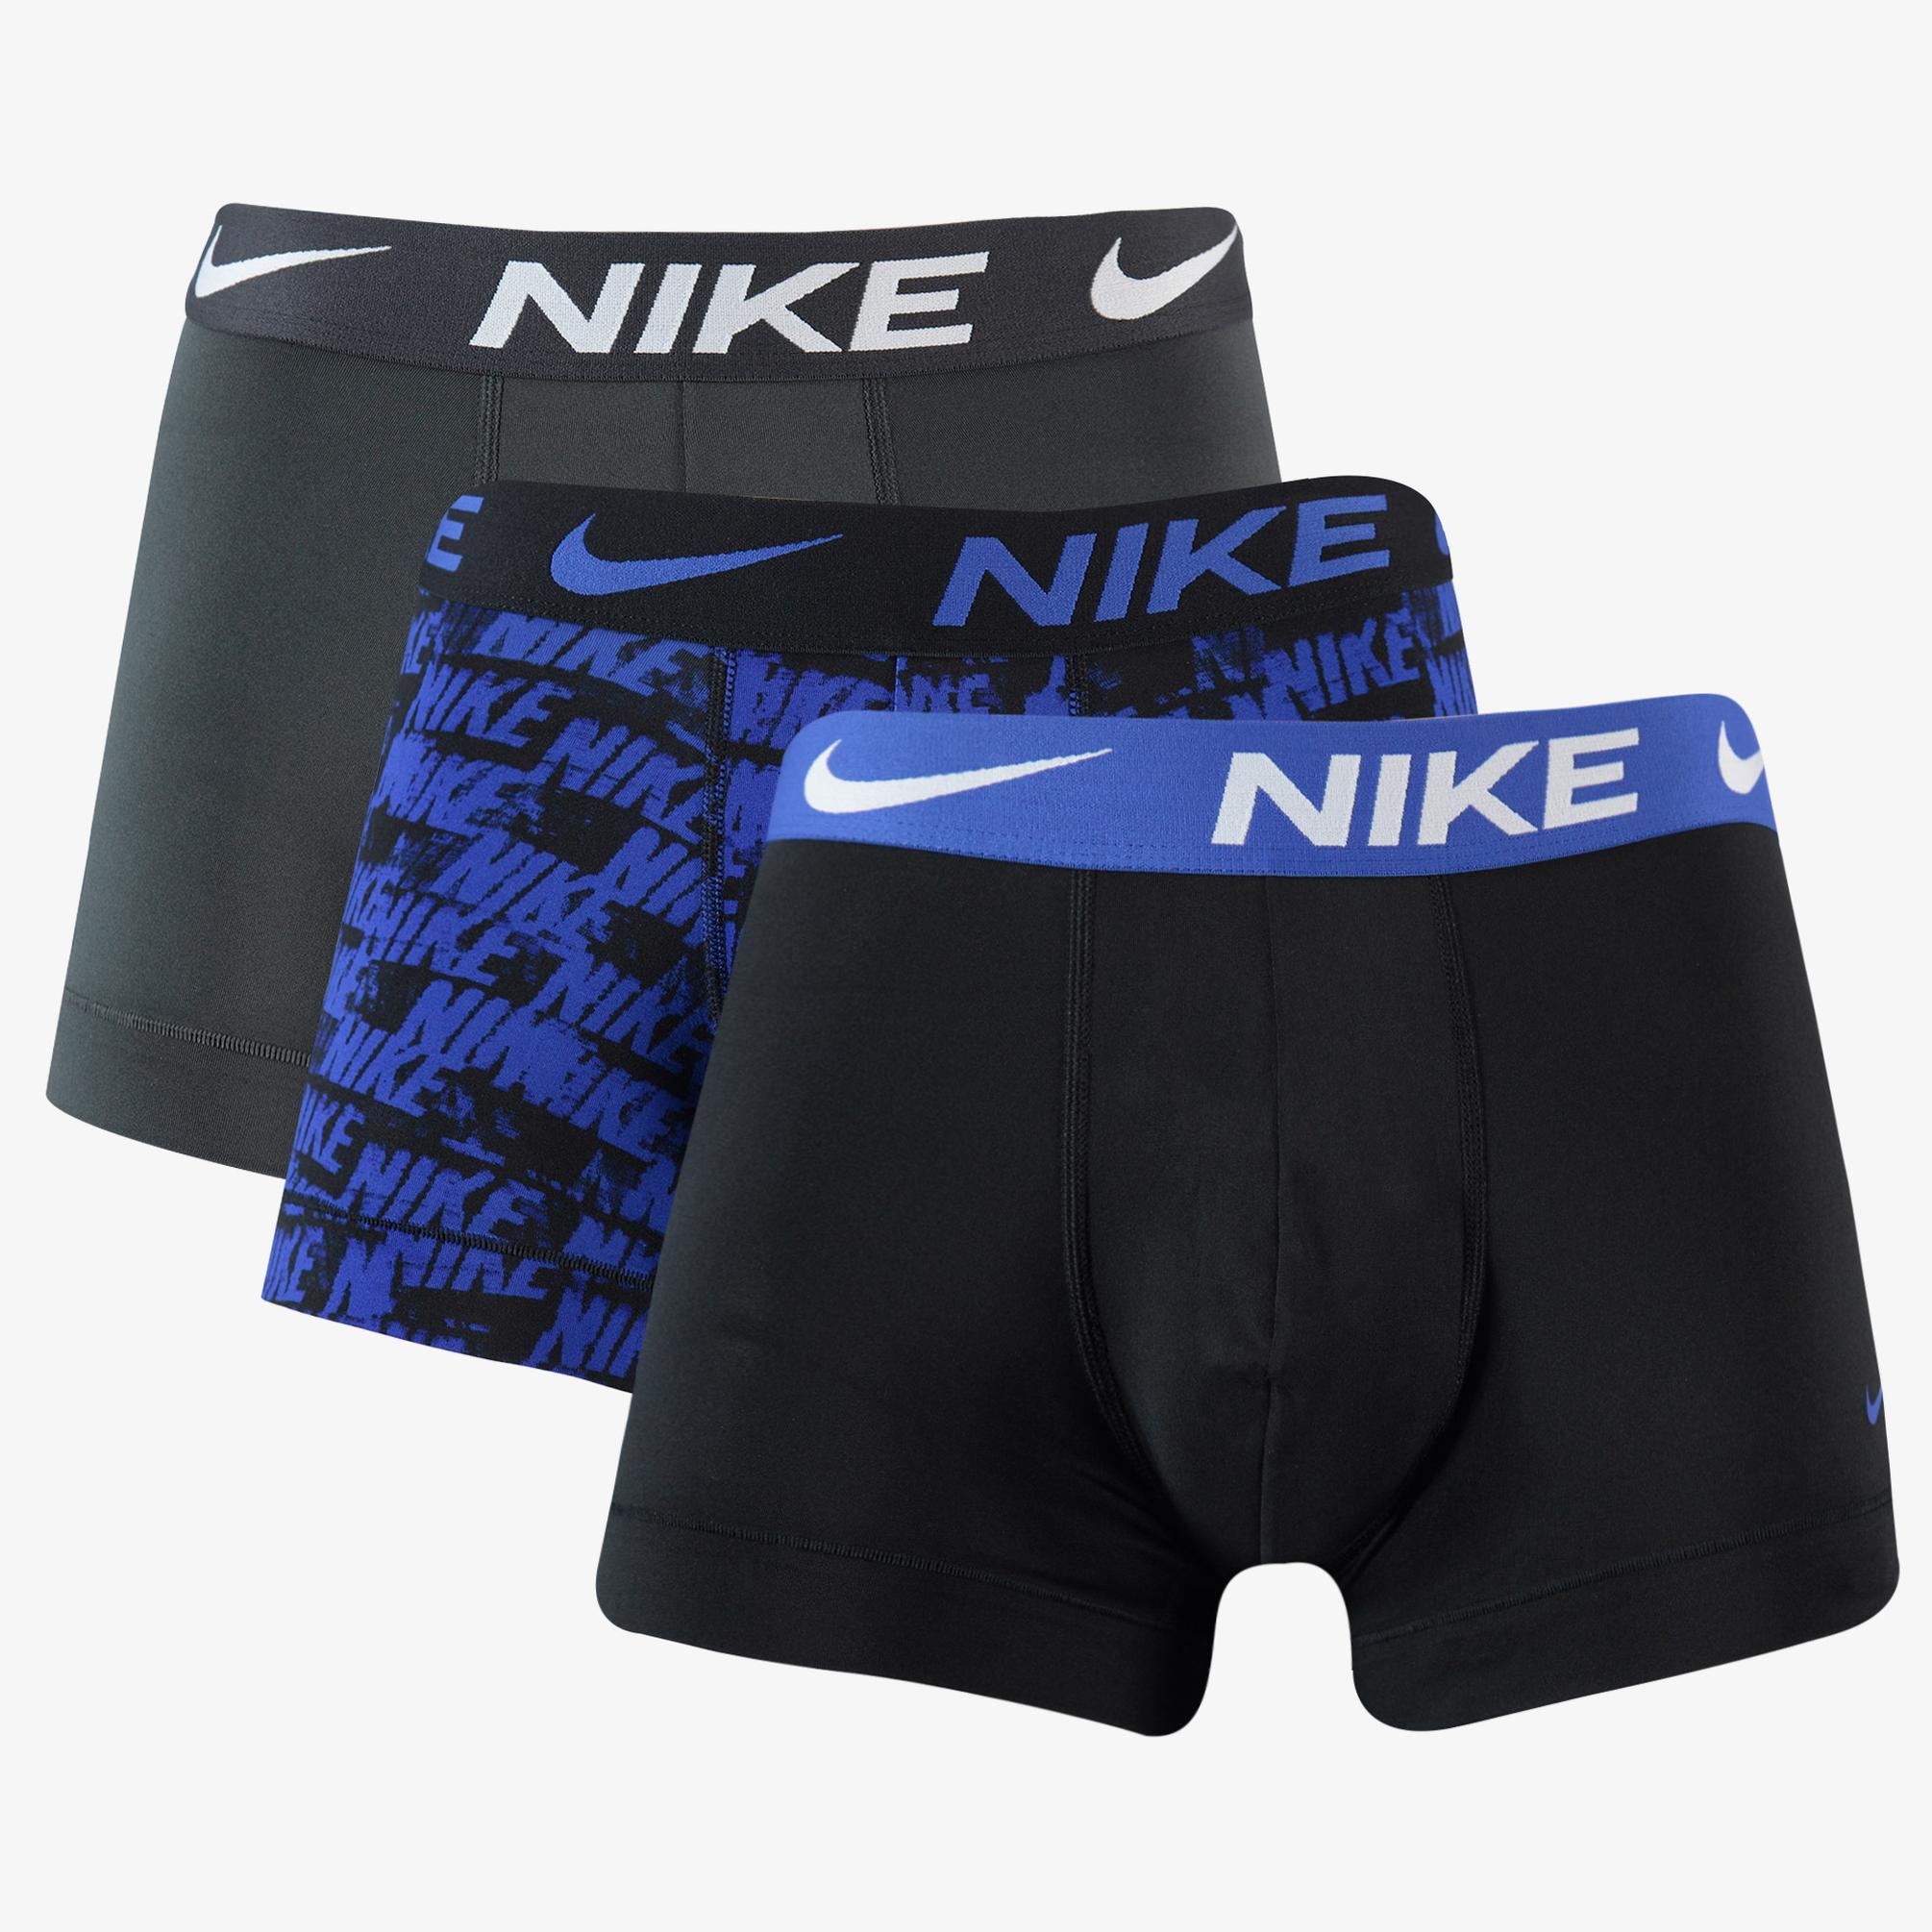  Nike Trunk 3'lü Erkek Çok Renkli Boxer